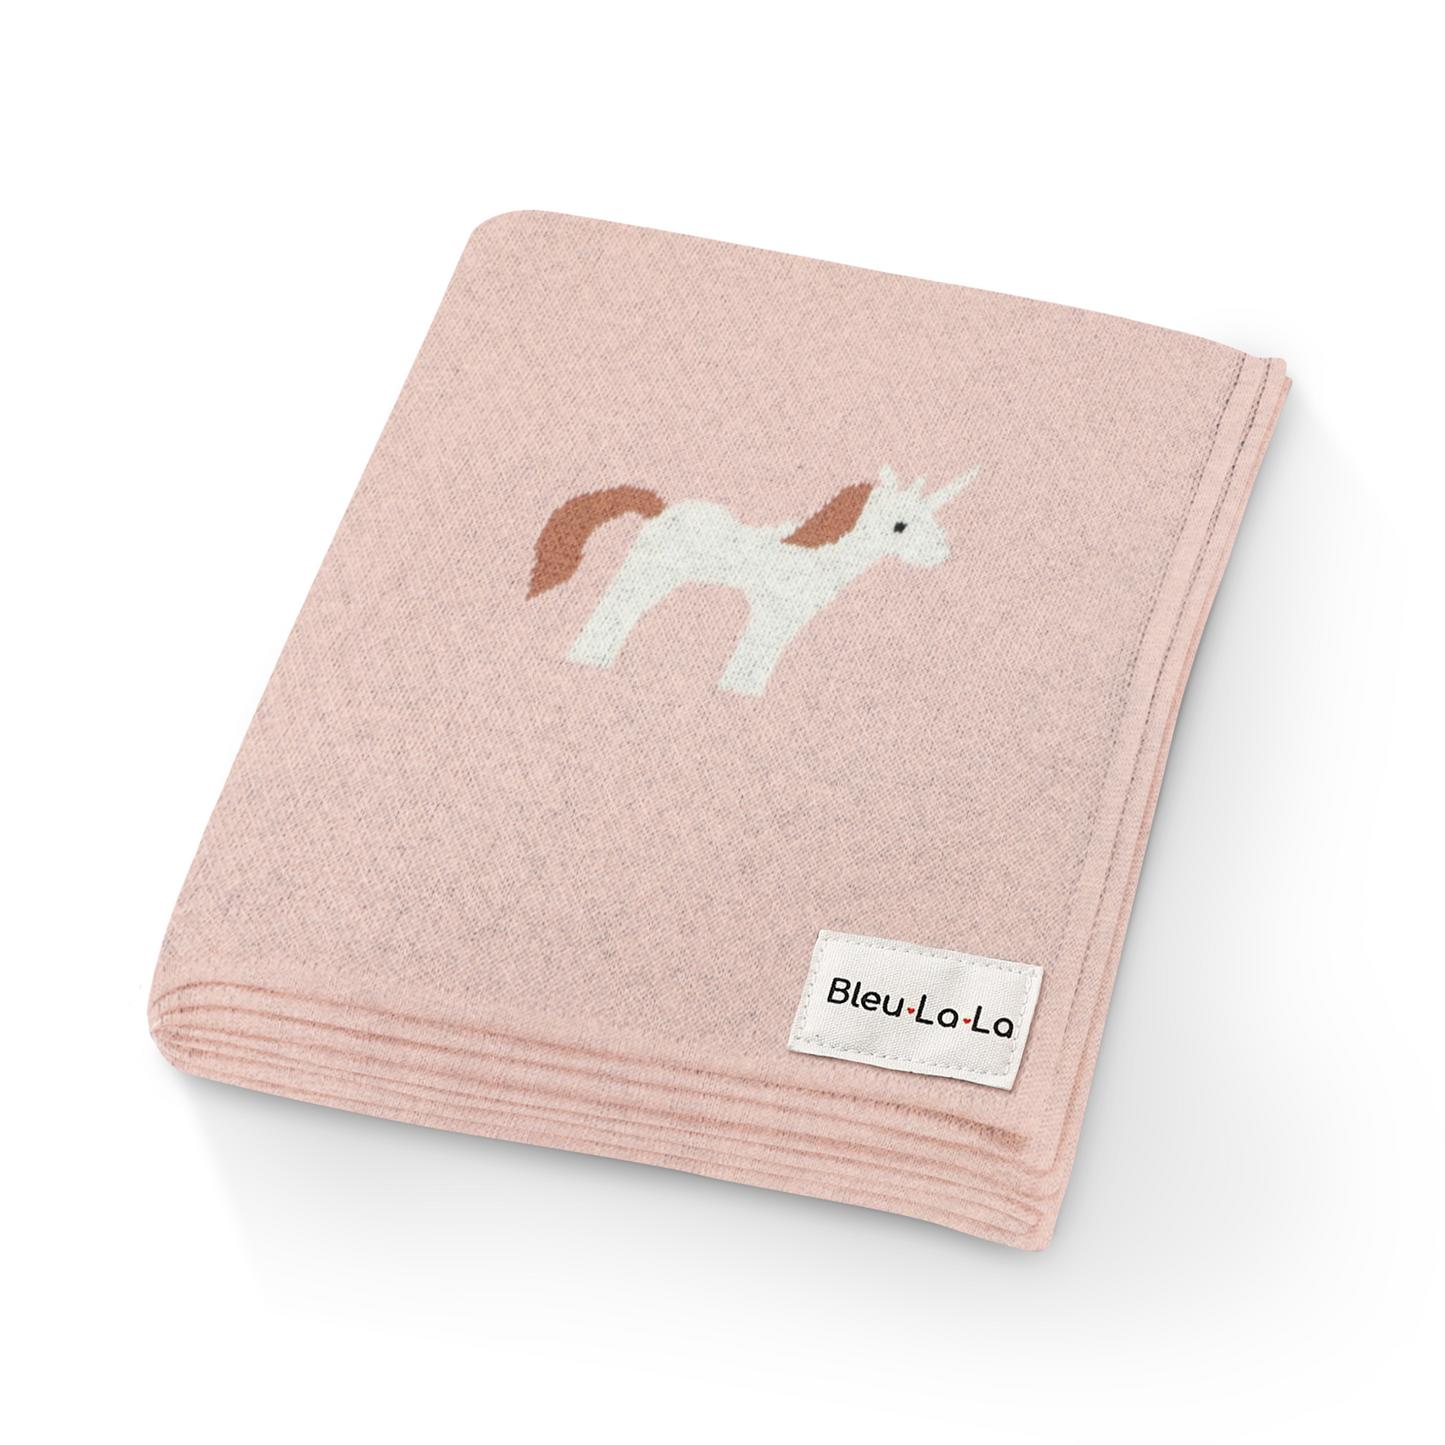 Knit Unicorn Blanket by Bleu La La